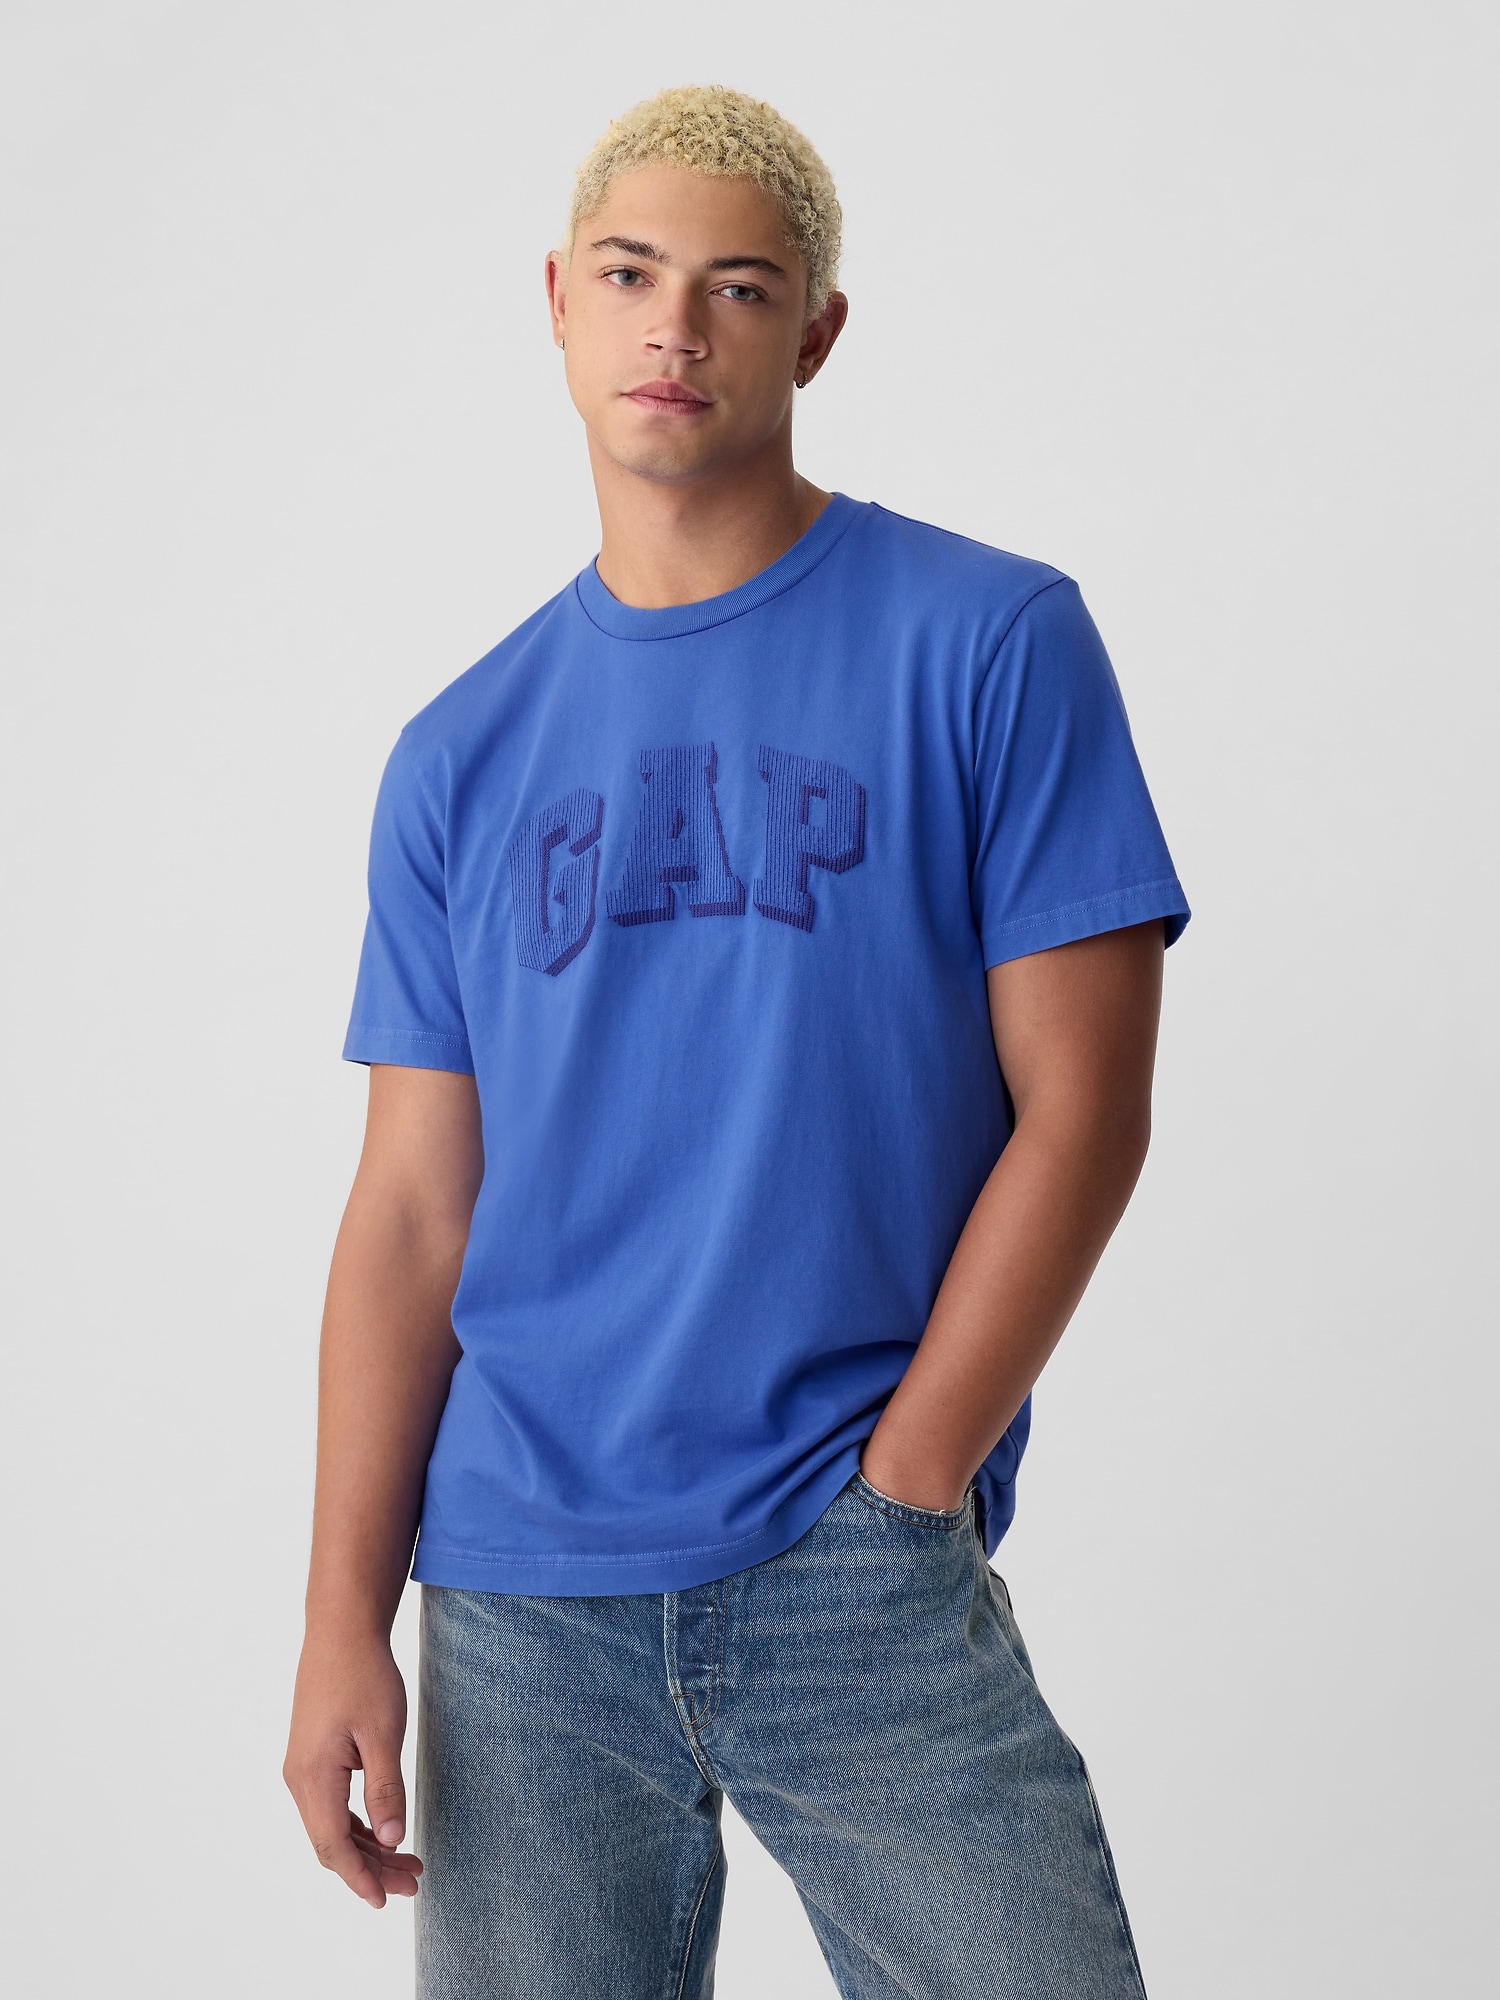 Gapアーチロゴ Tシャツ(ユニセックス)